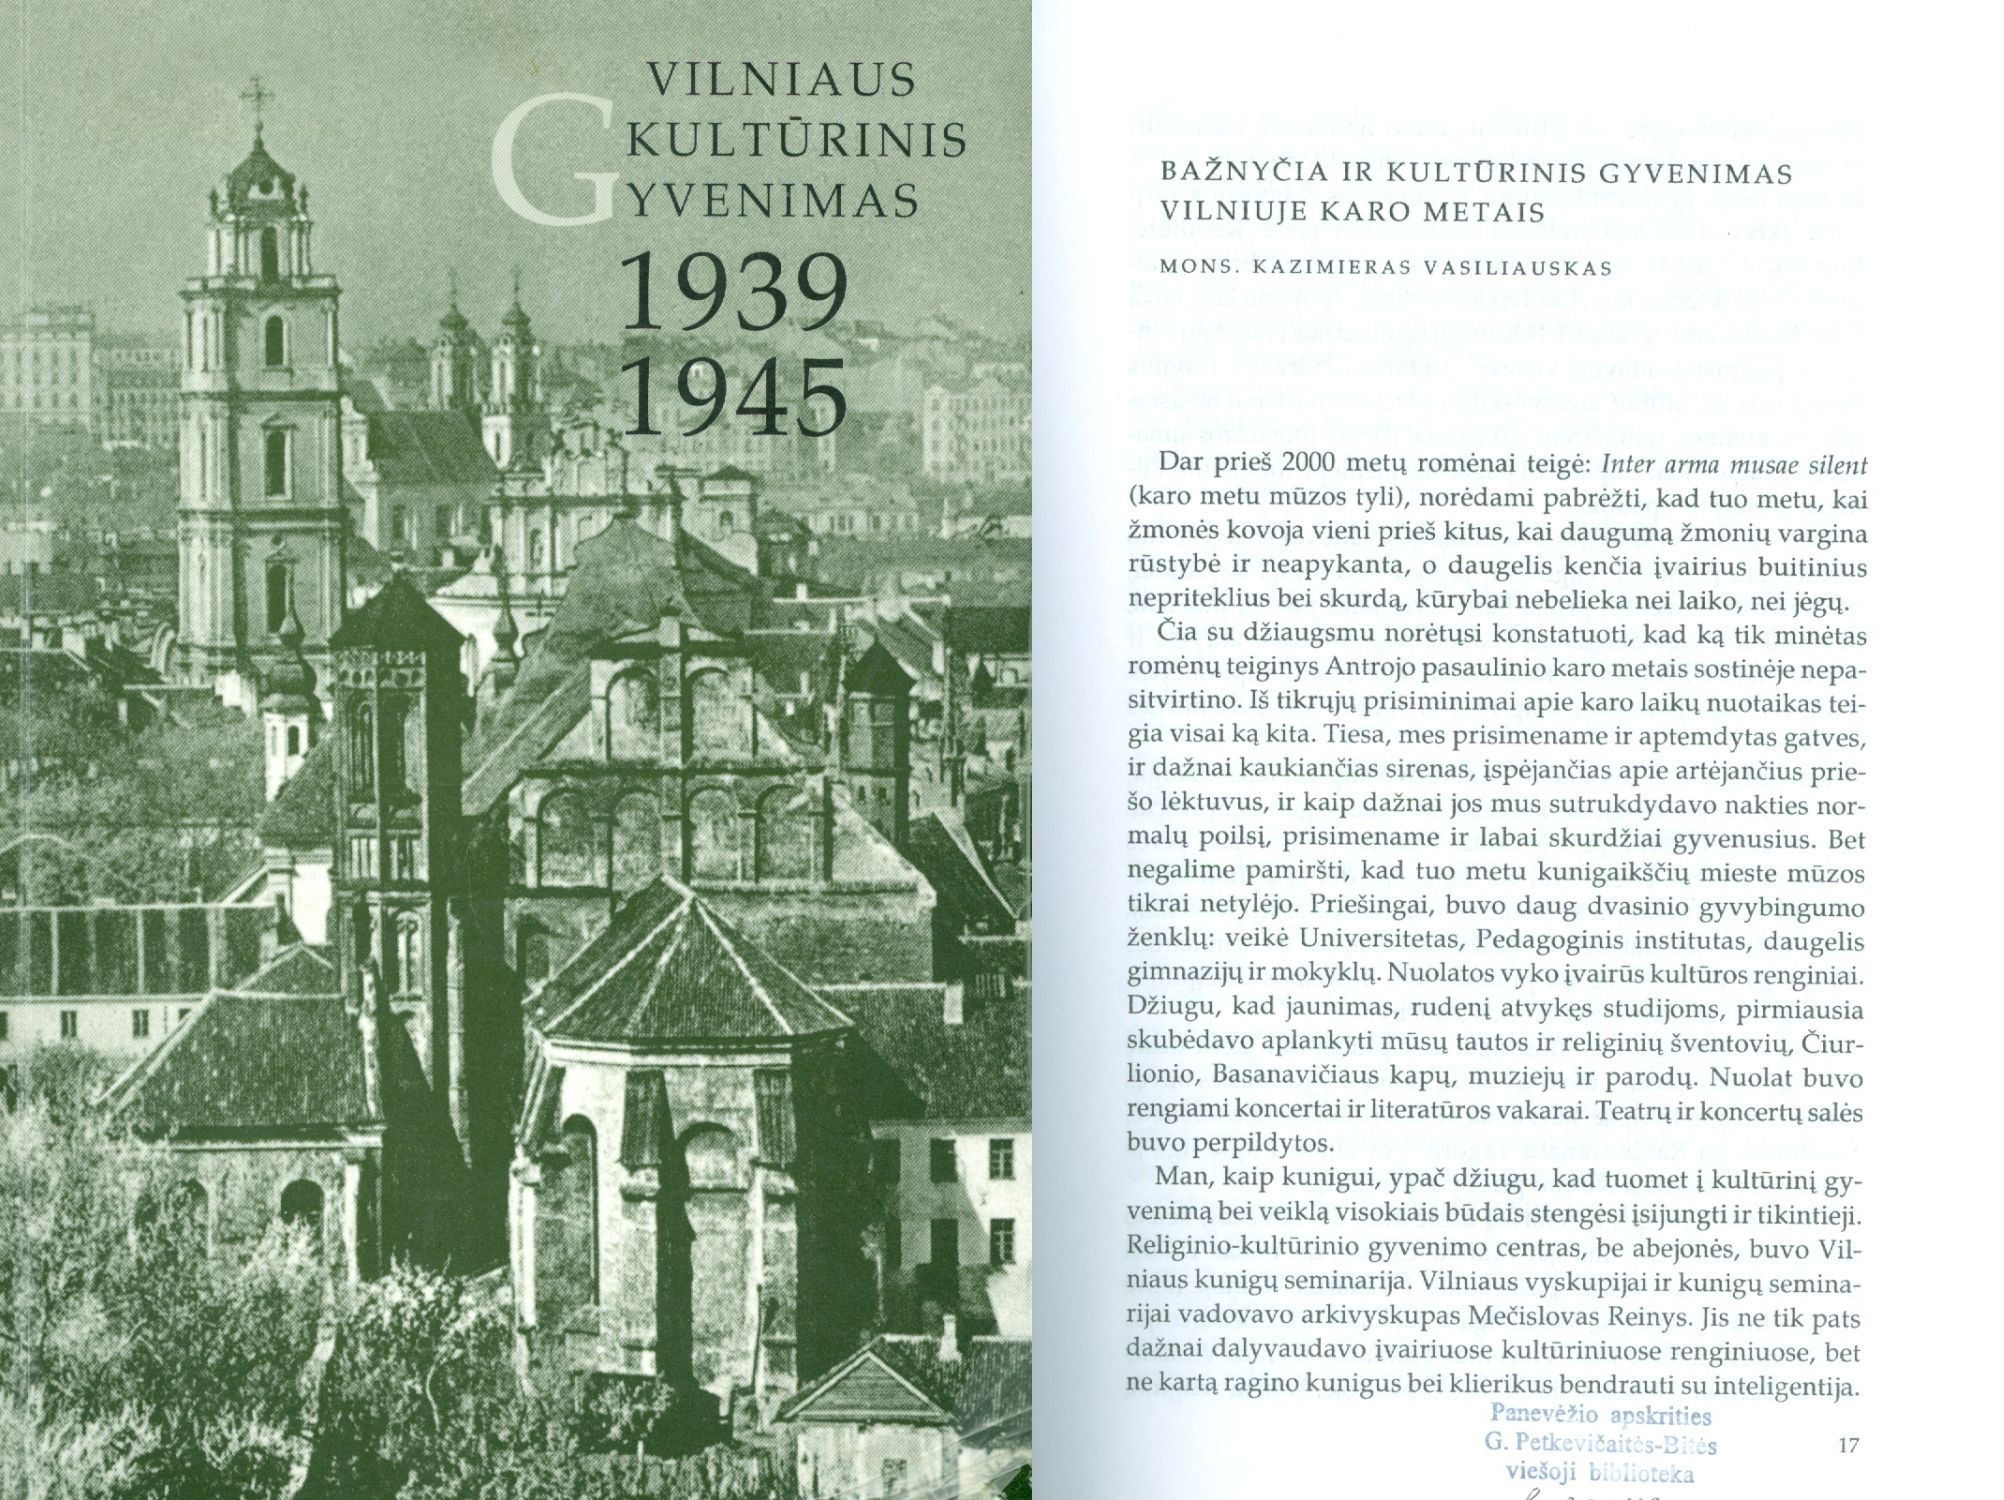 Vilniaus kultūrinis gyvenimas, 1939-1945 knygos viršelis